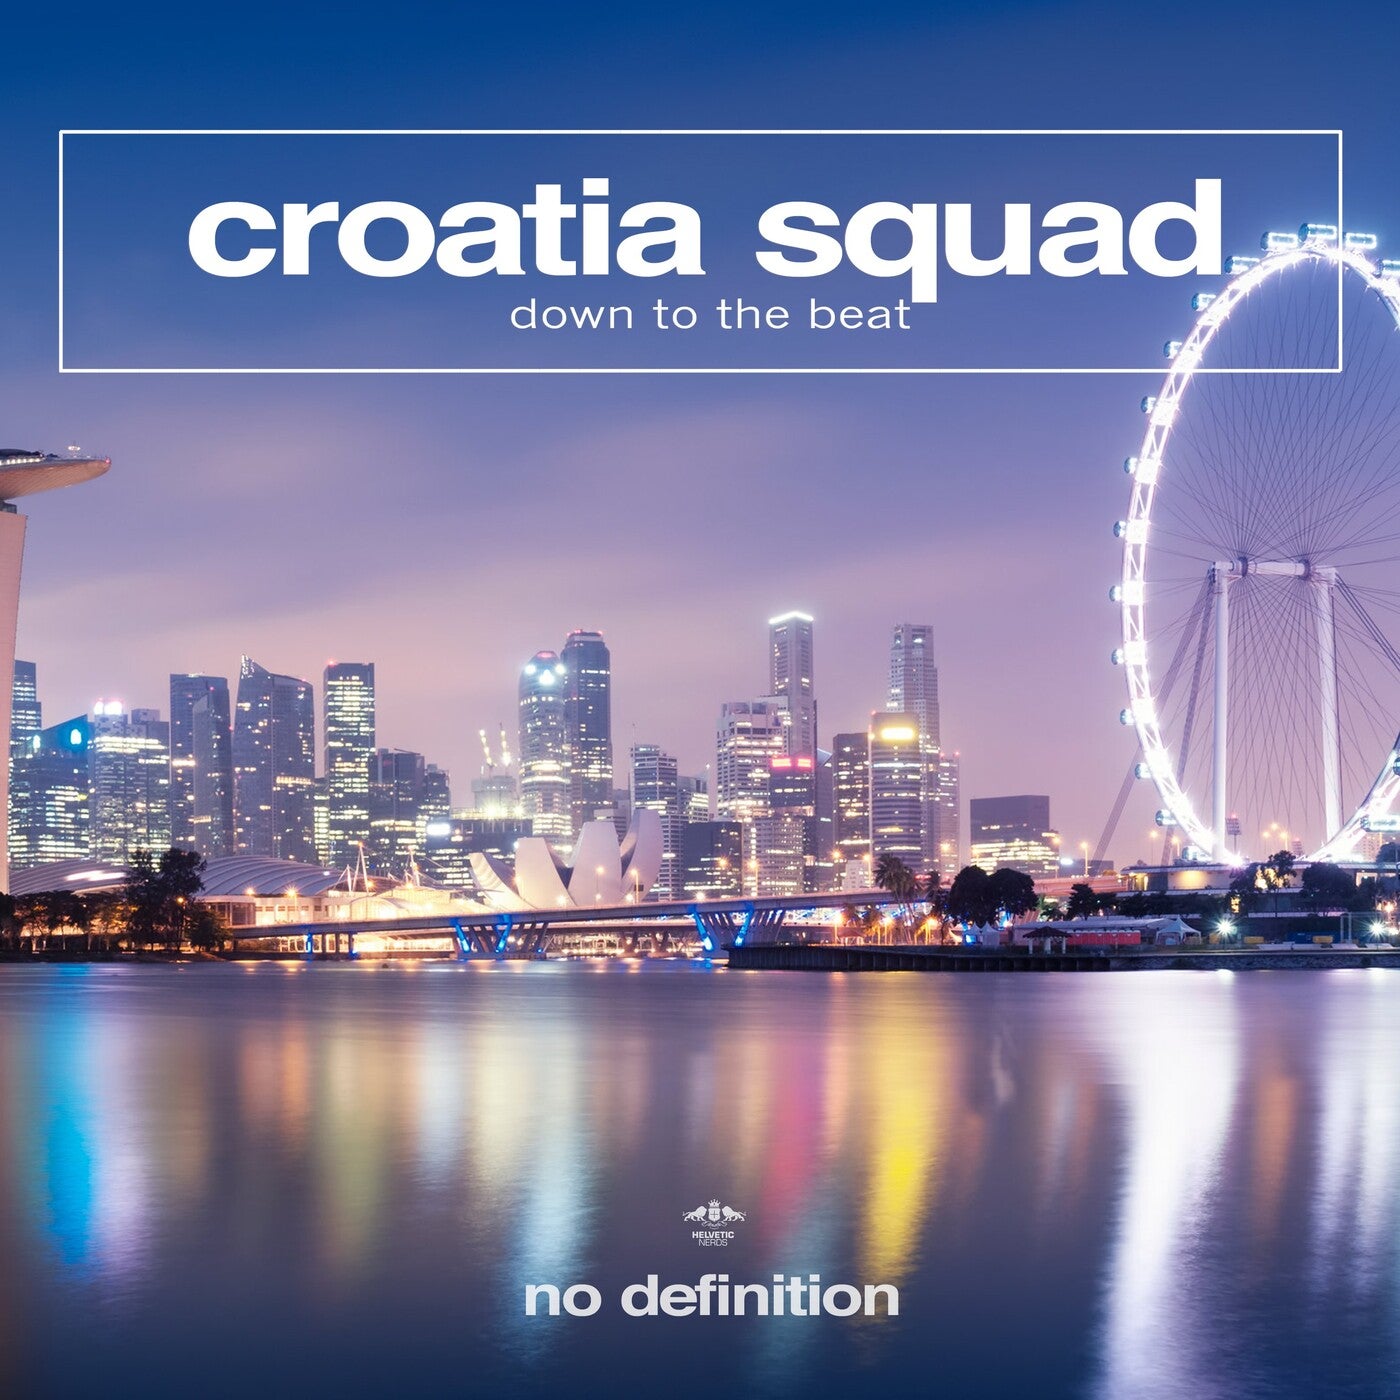 Super Sensual Original Club Mix Croatia Squad